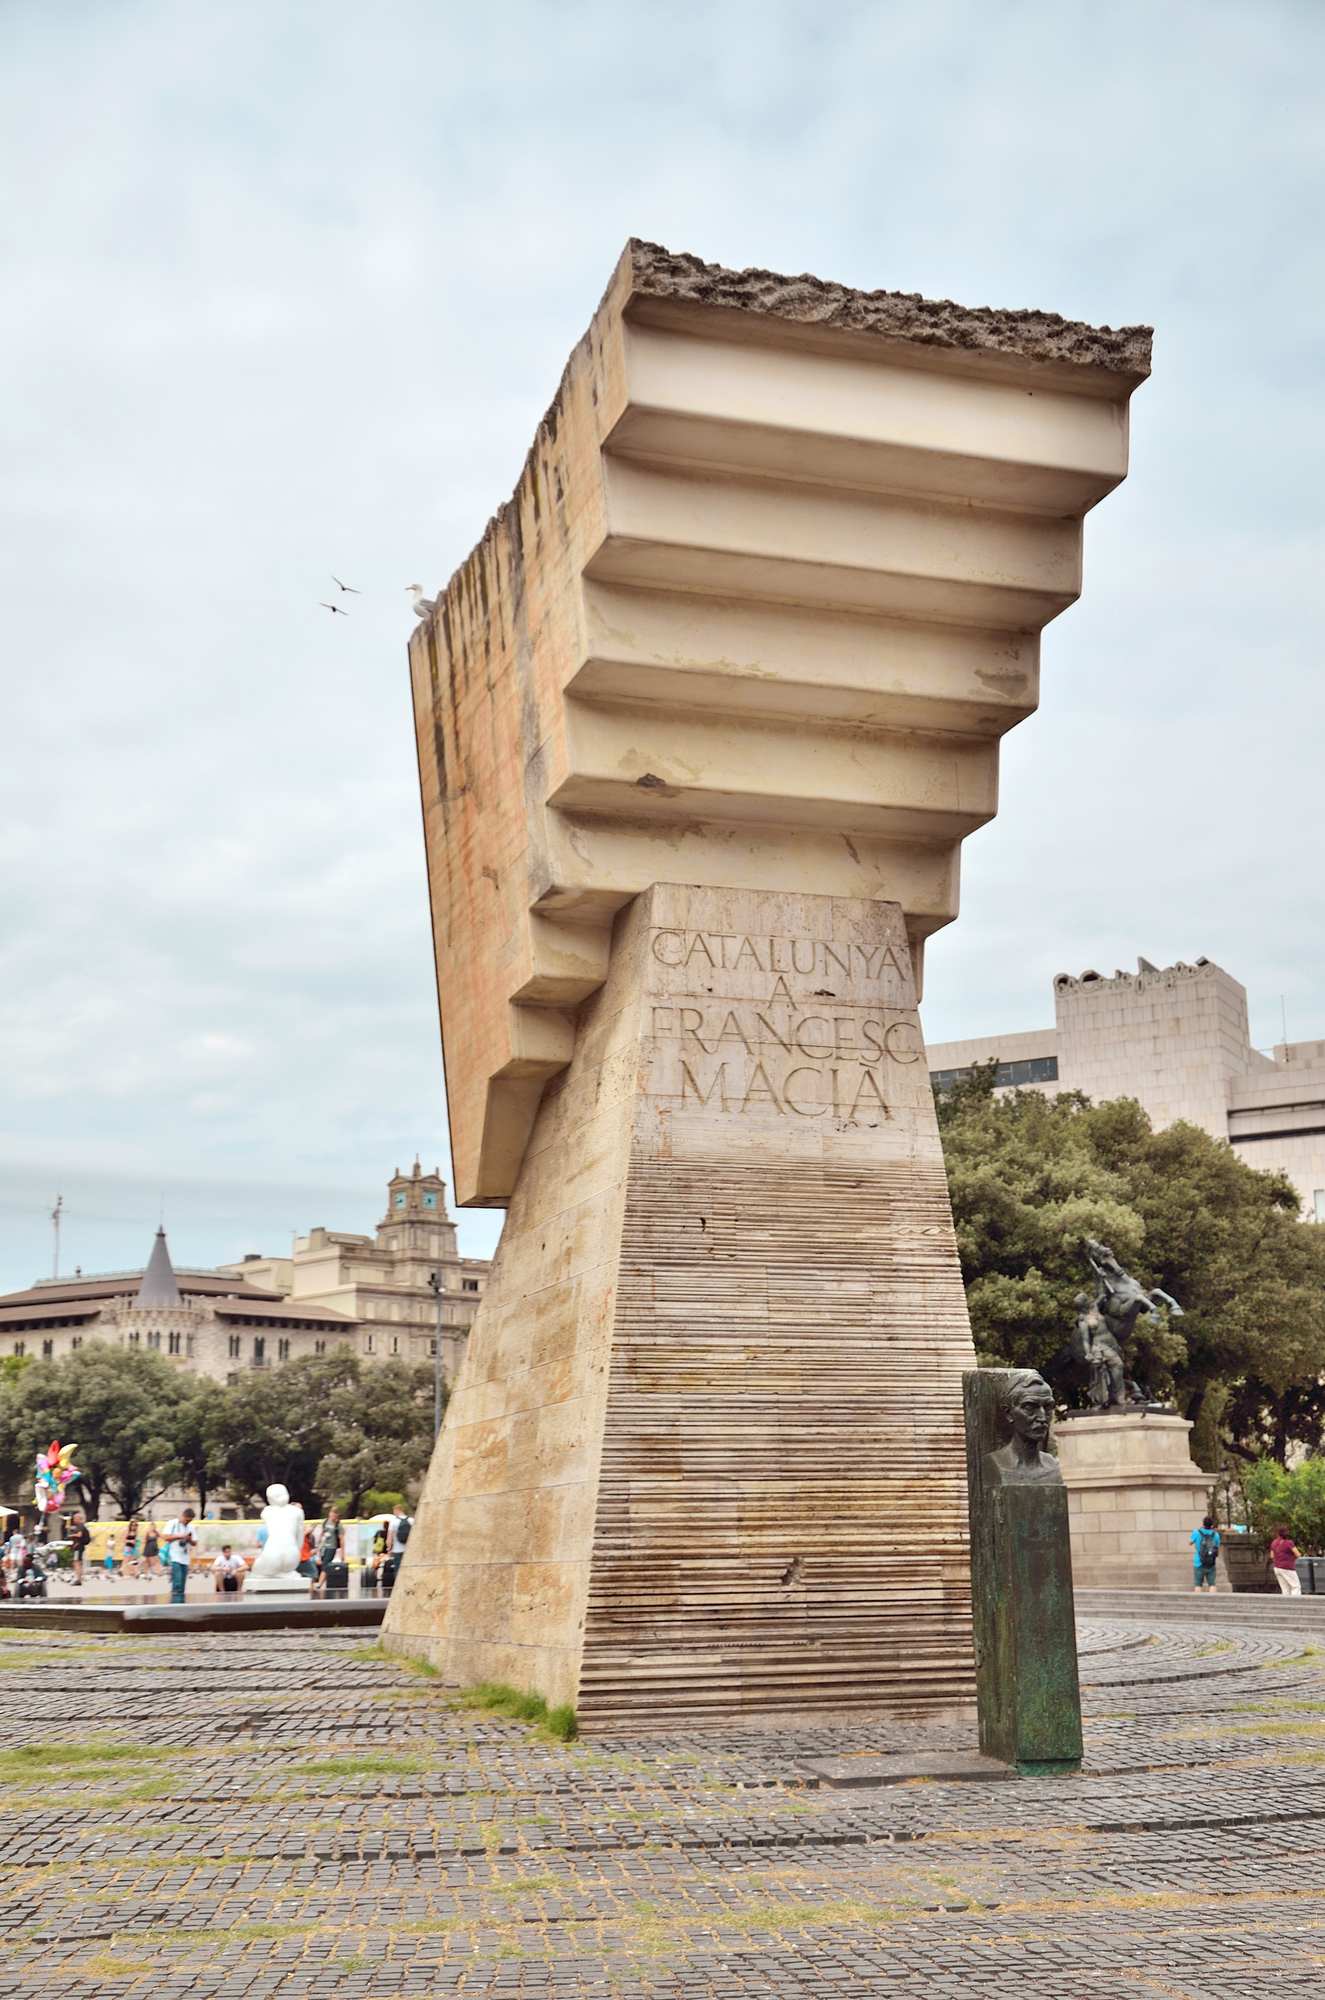 Необычный монумент архитектора Жозепа Субиракса на площади Каталонии